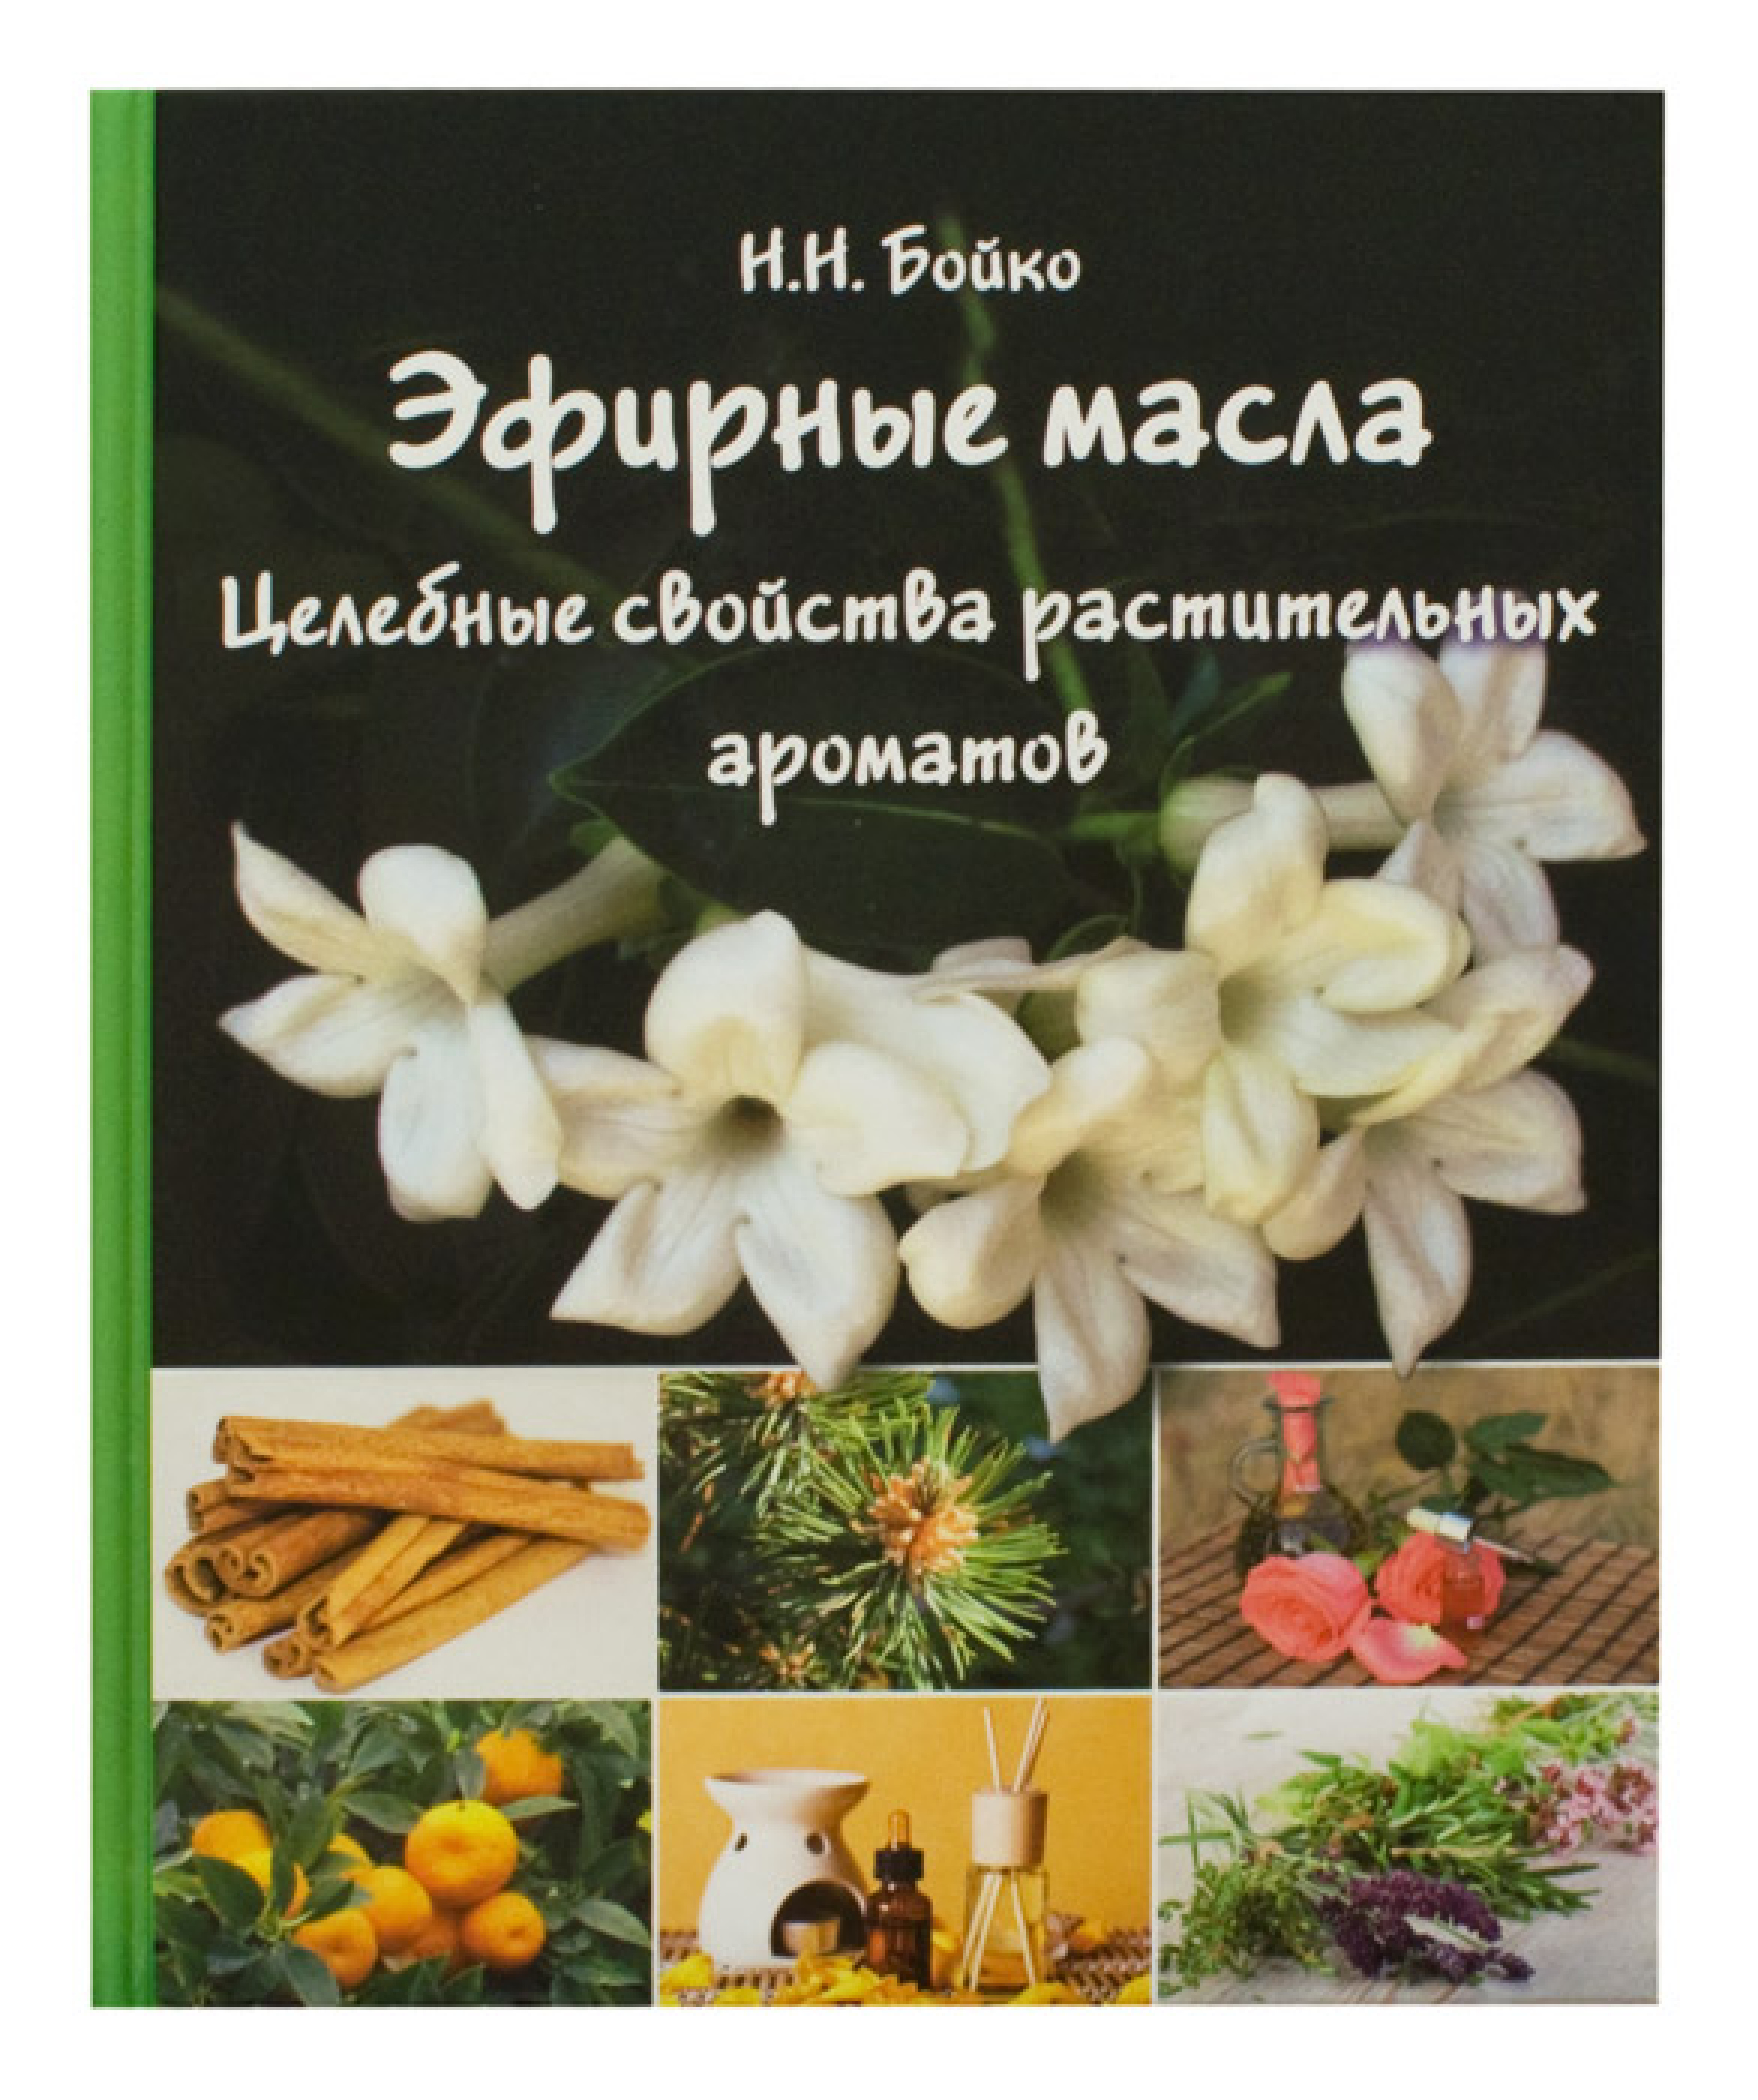 Эфирные масла: целебные свойства растительных ароматов